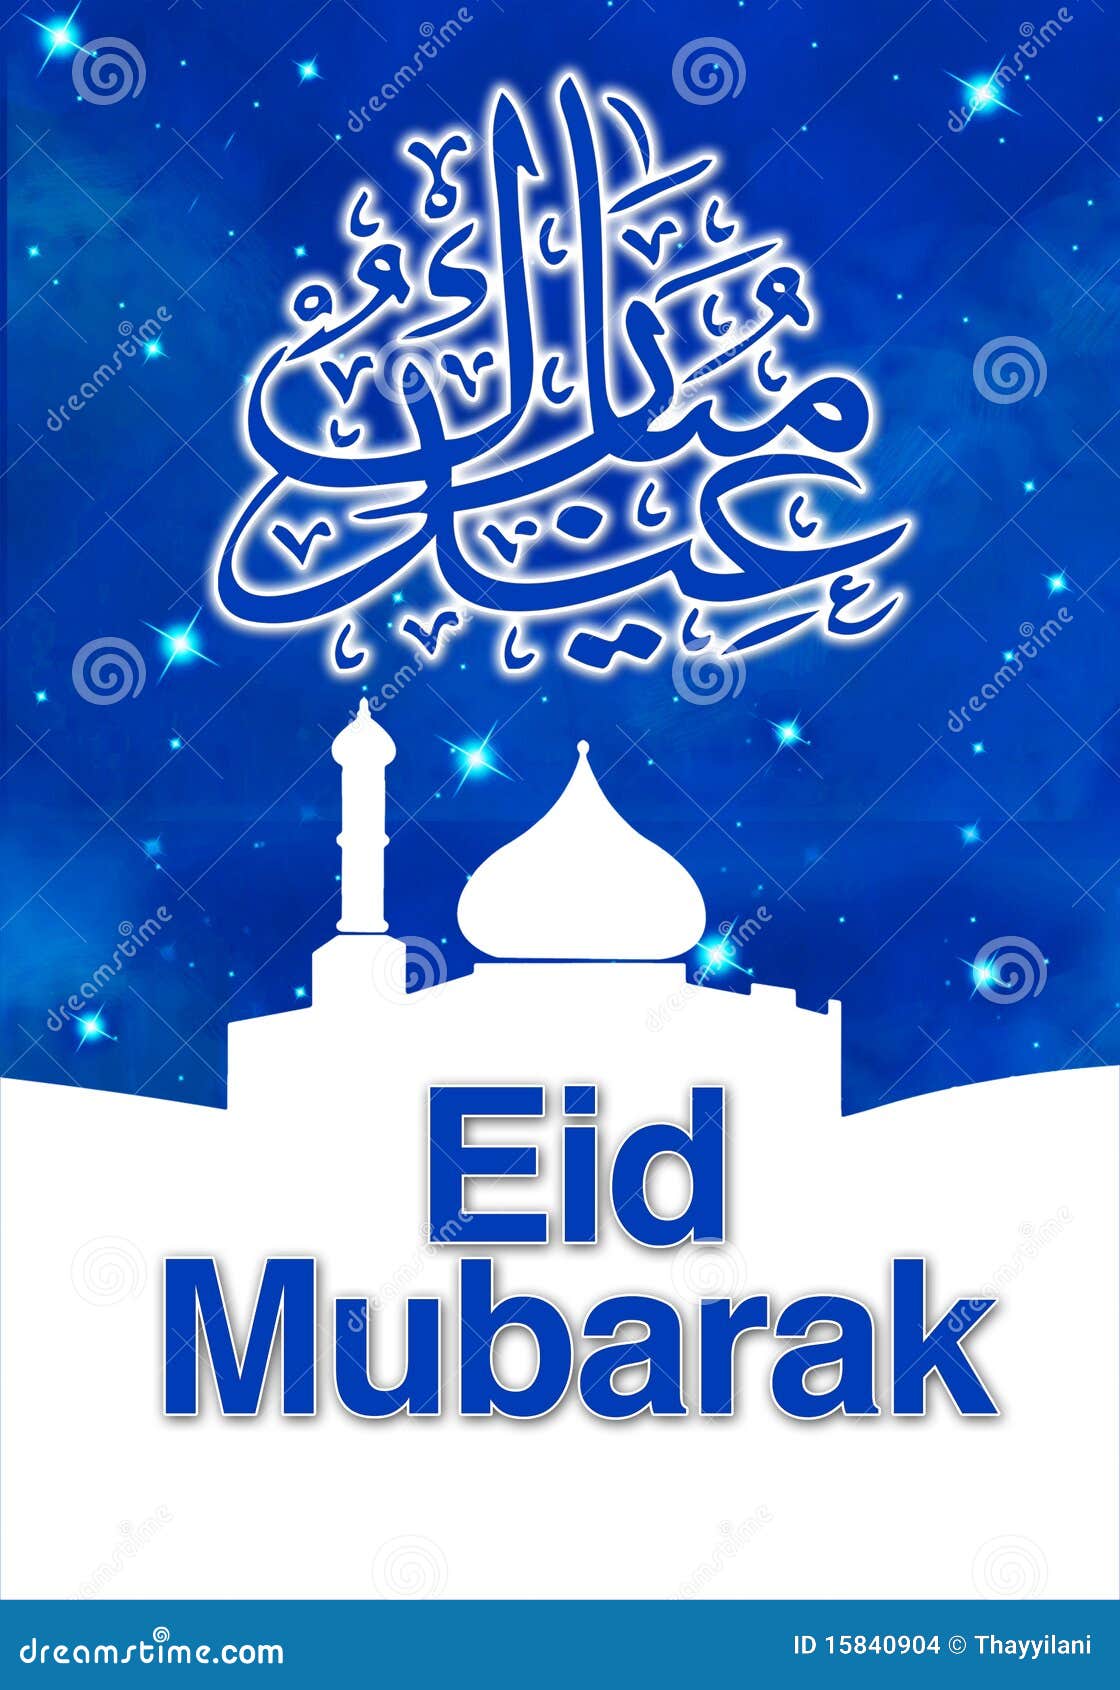 eid-mubarak-15840904.jpg